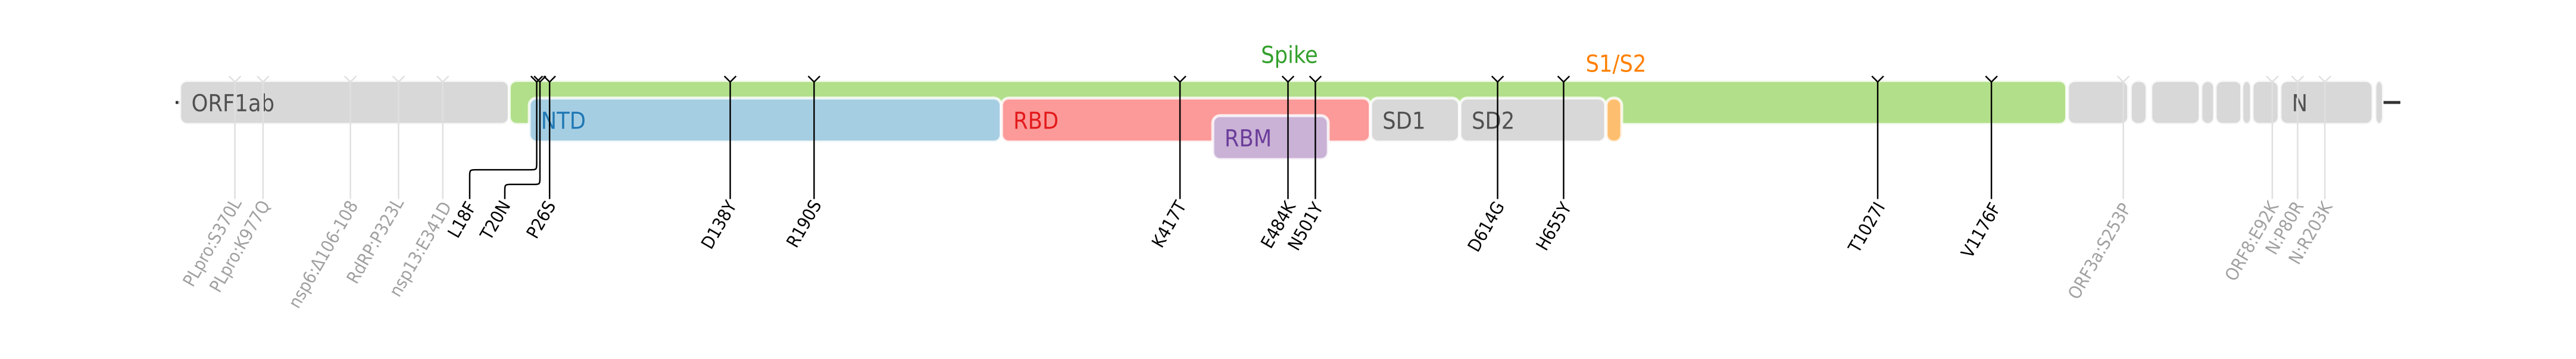 スパイクタンパク質に焦点を当てたSARS-CoV-2のゲノムマップ上にプロットされたガンマ株のアミノ酸変異。